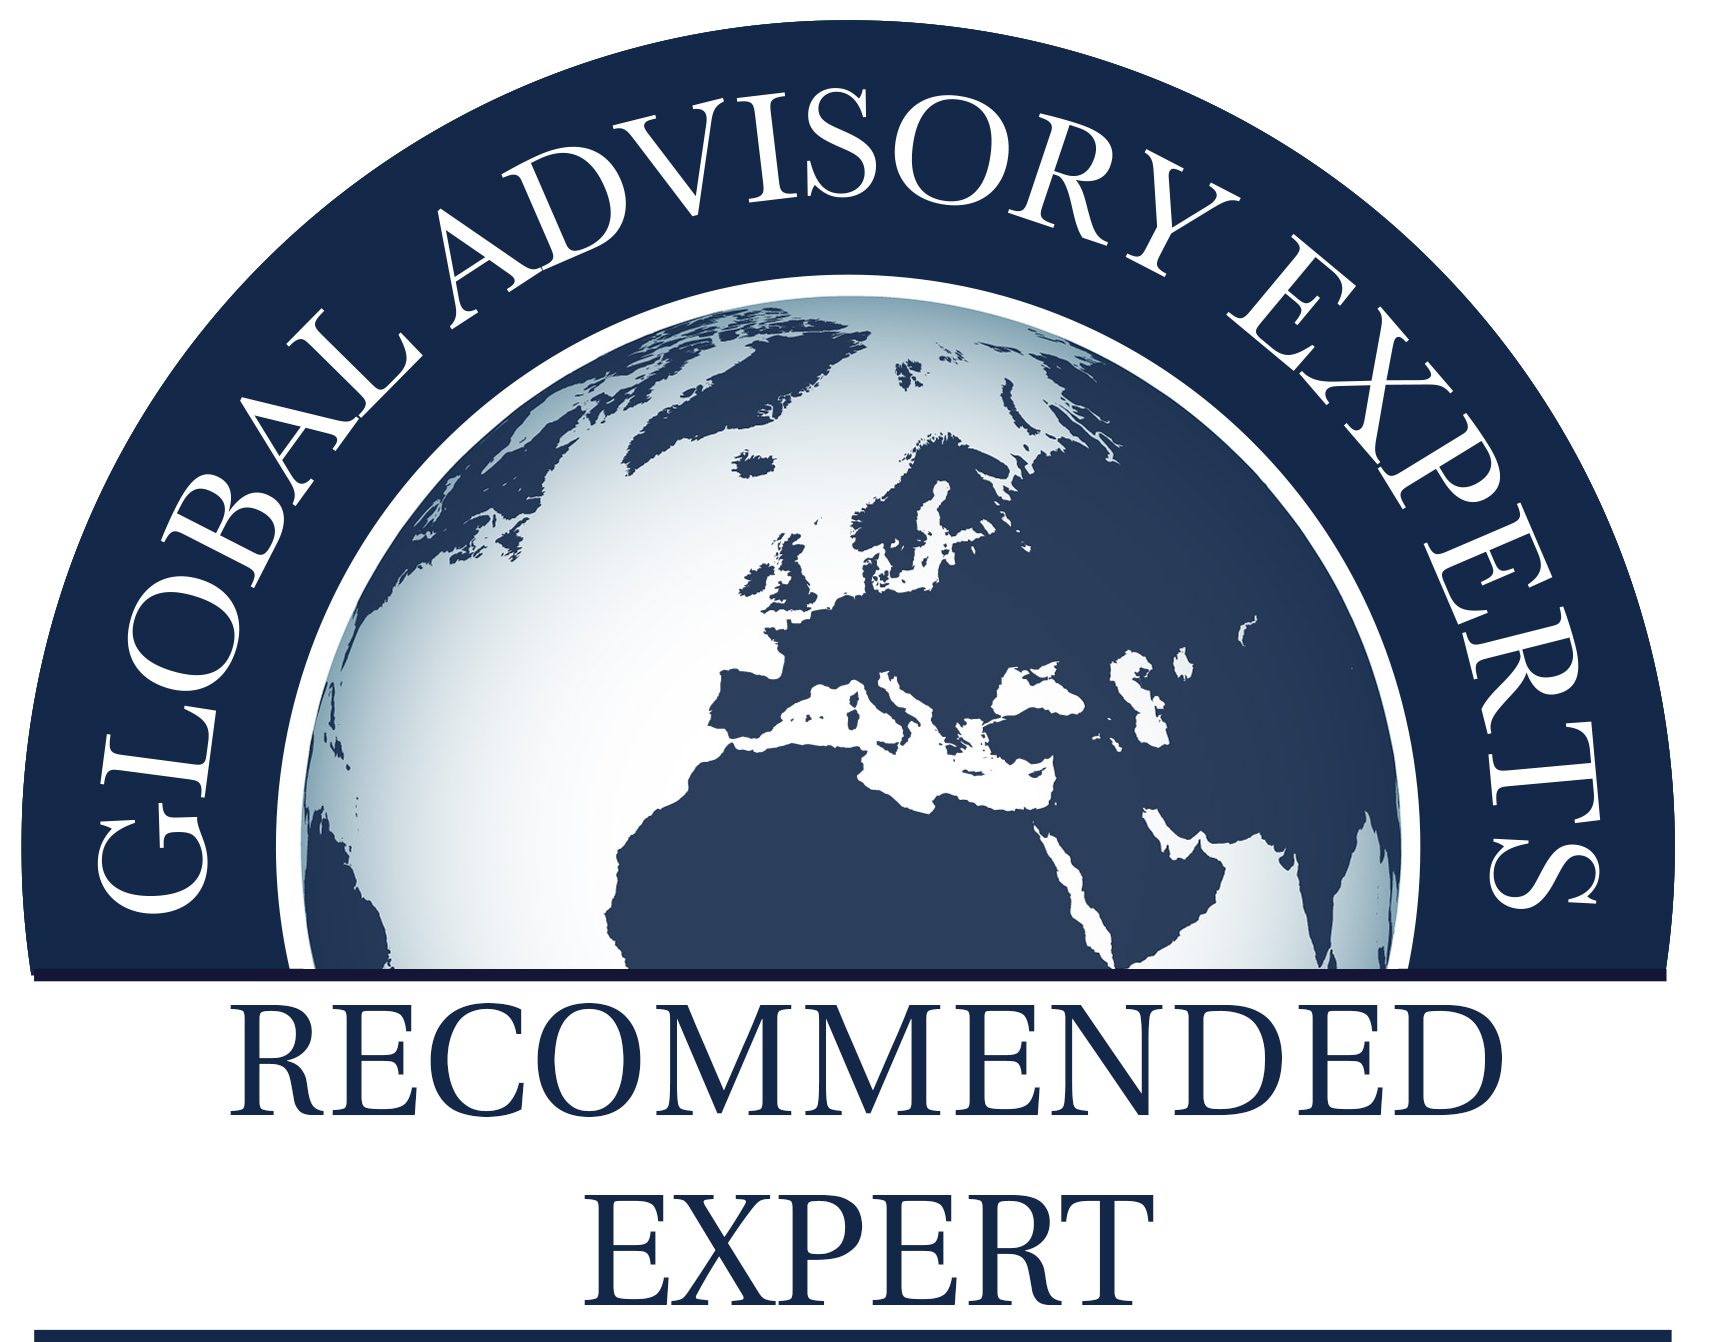 Global experts